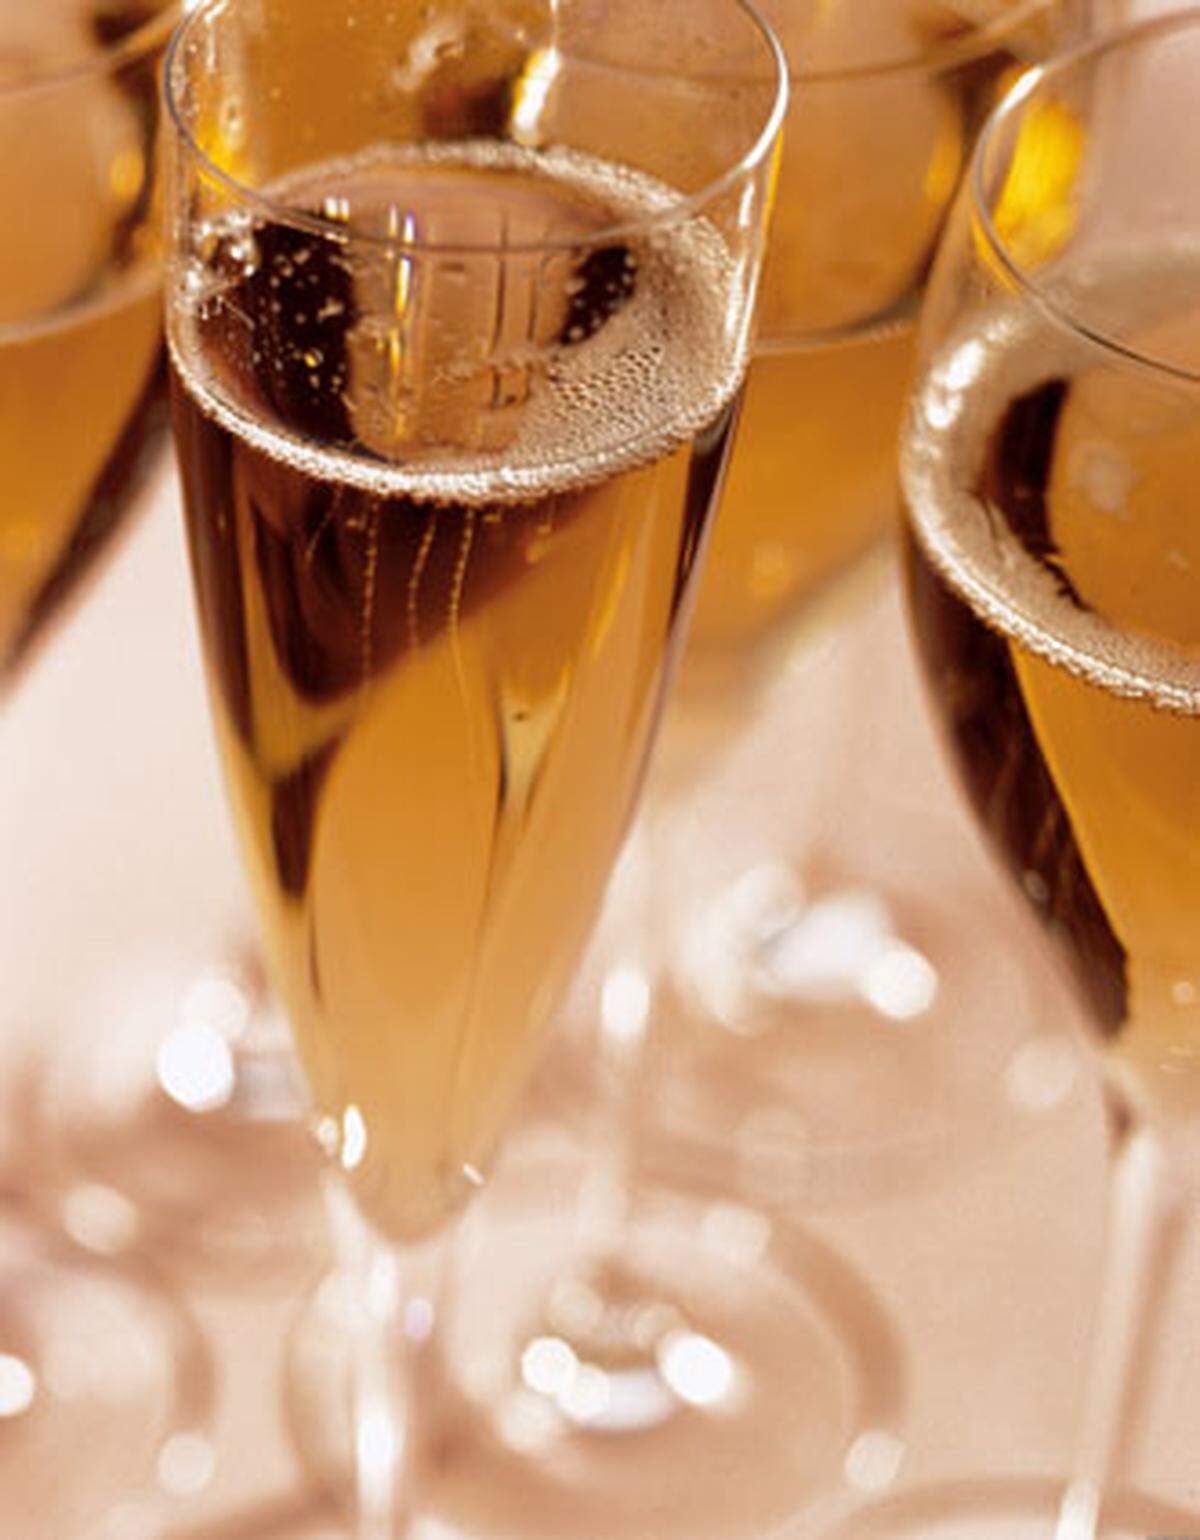 Bei Rosé-Champagner ist das Cuvee-Verhältnis zwischen Weiß- und Rotgrundweinen nicht geregelt, es heißt dann etwa "mehrheitlich" Pinot Noir de saignée, also durch Saftabzug während Rotweinproduktion, plus Chardonnay. Ob man eine deutliche Himbeer-Ribisel-Aromatik oder eher kirschige Noten bevorzugt, ist dann wiederum Geschmackssache.